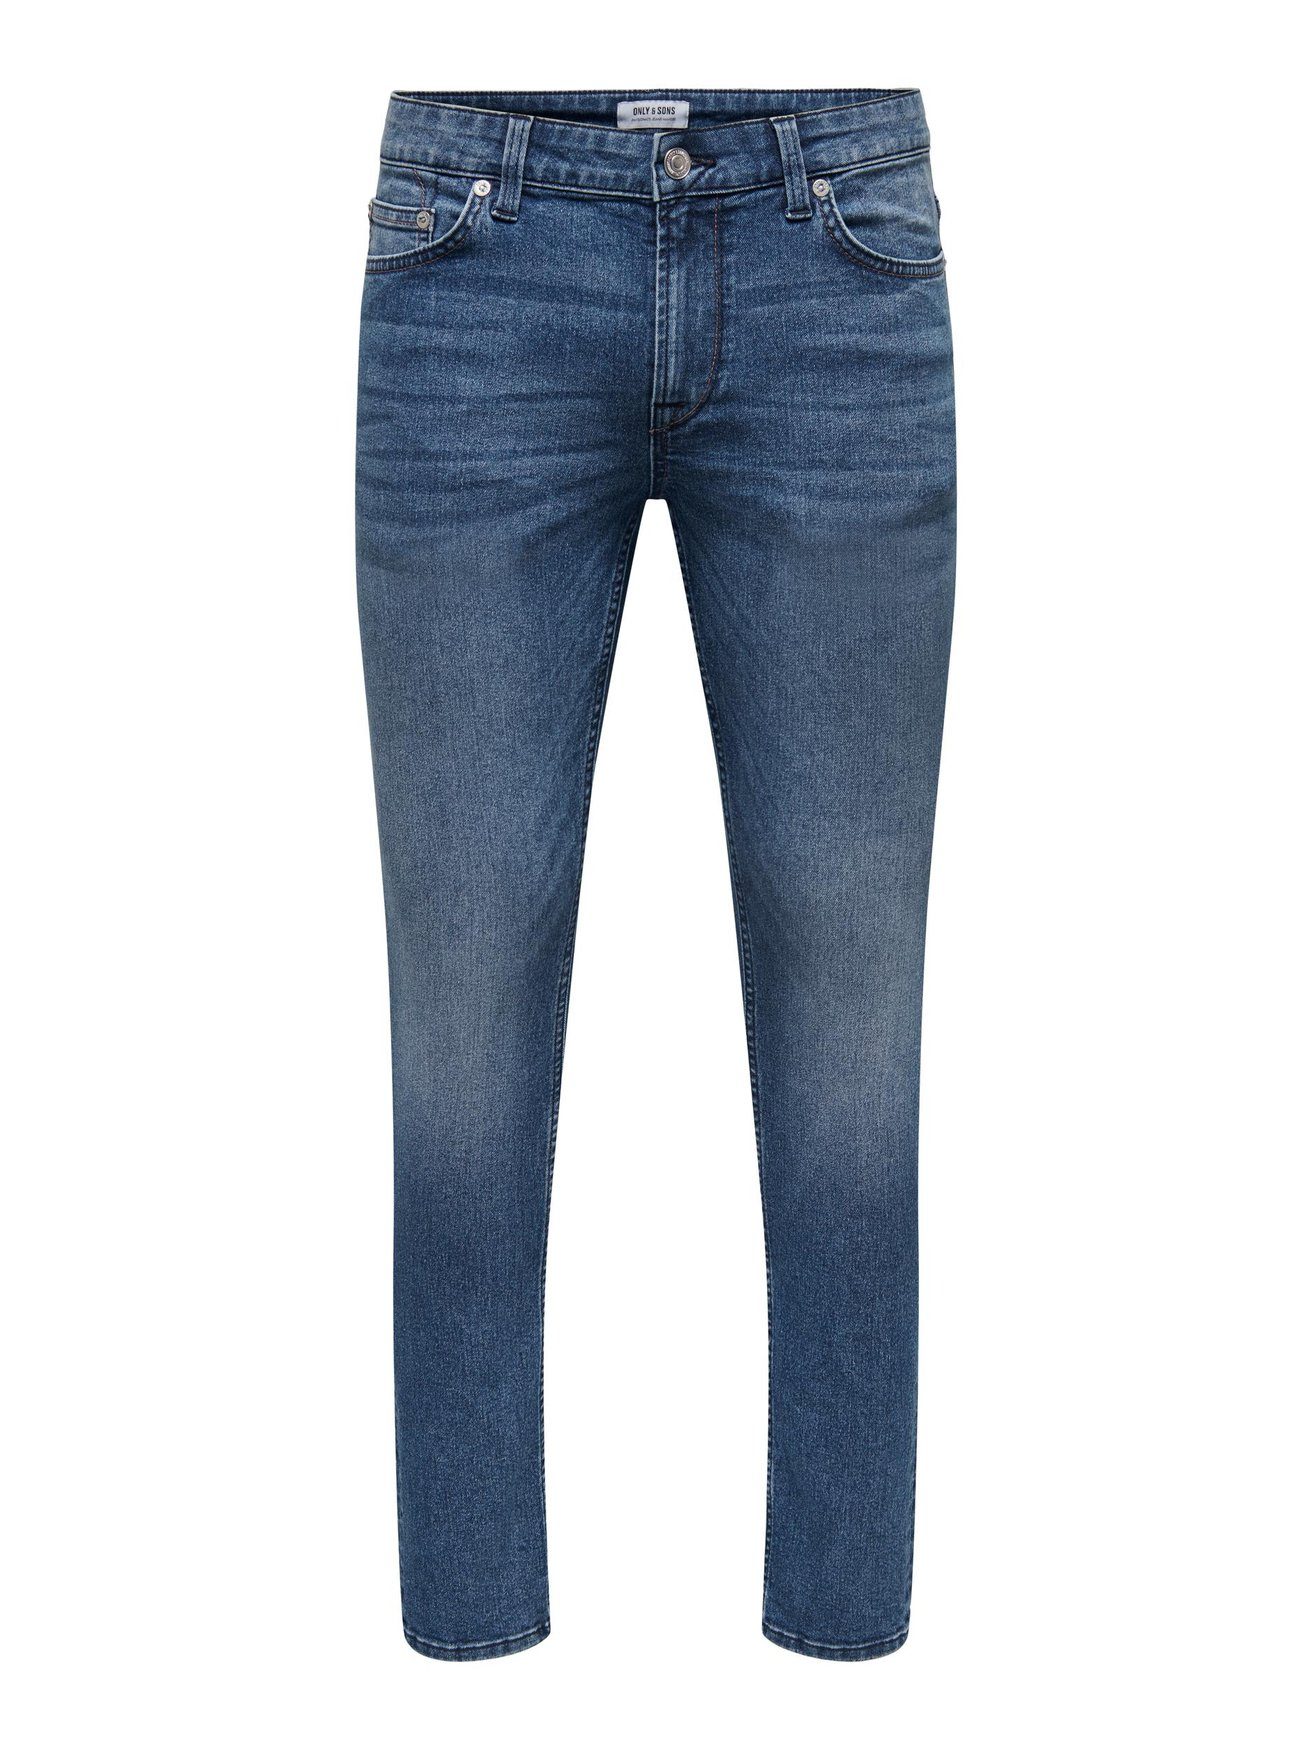 Geschäfte mit regulären Produkten ONLY & SONS Pants Hose in Stoned Blau Basic 5615 Jeans ONSLOOM Slim Fit Denim Slim-fit-Jeans Washed